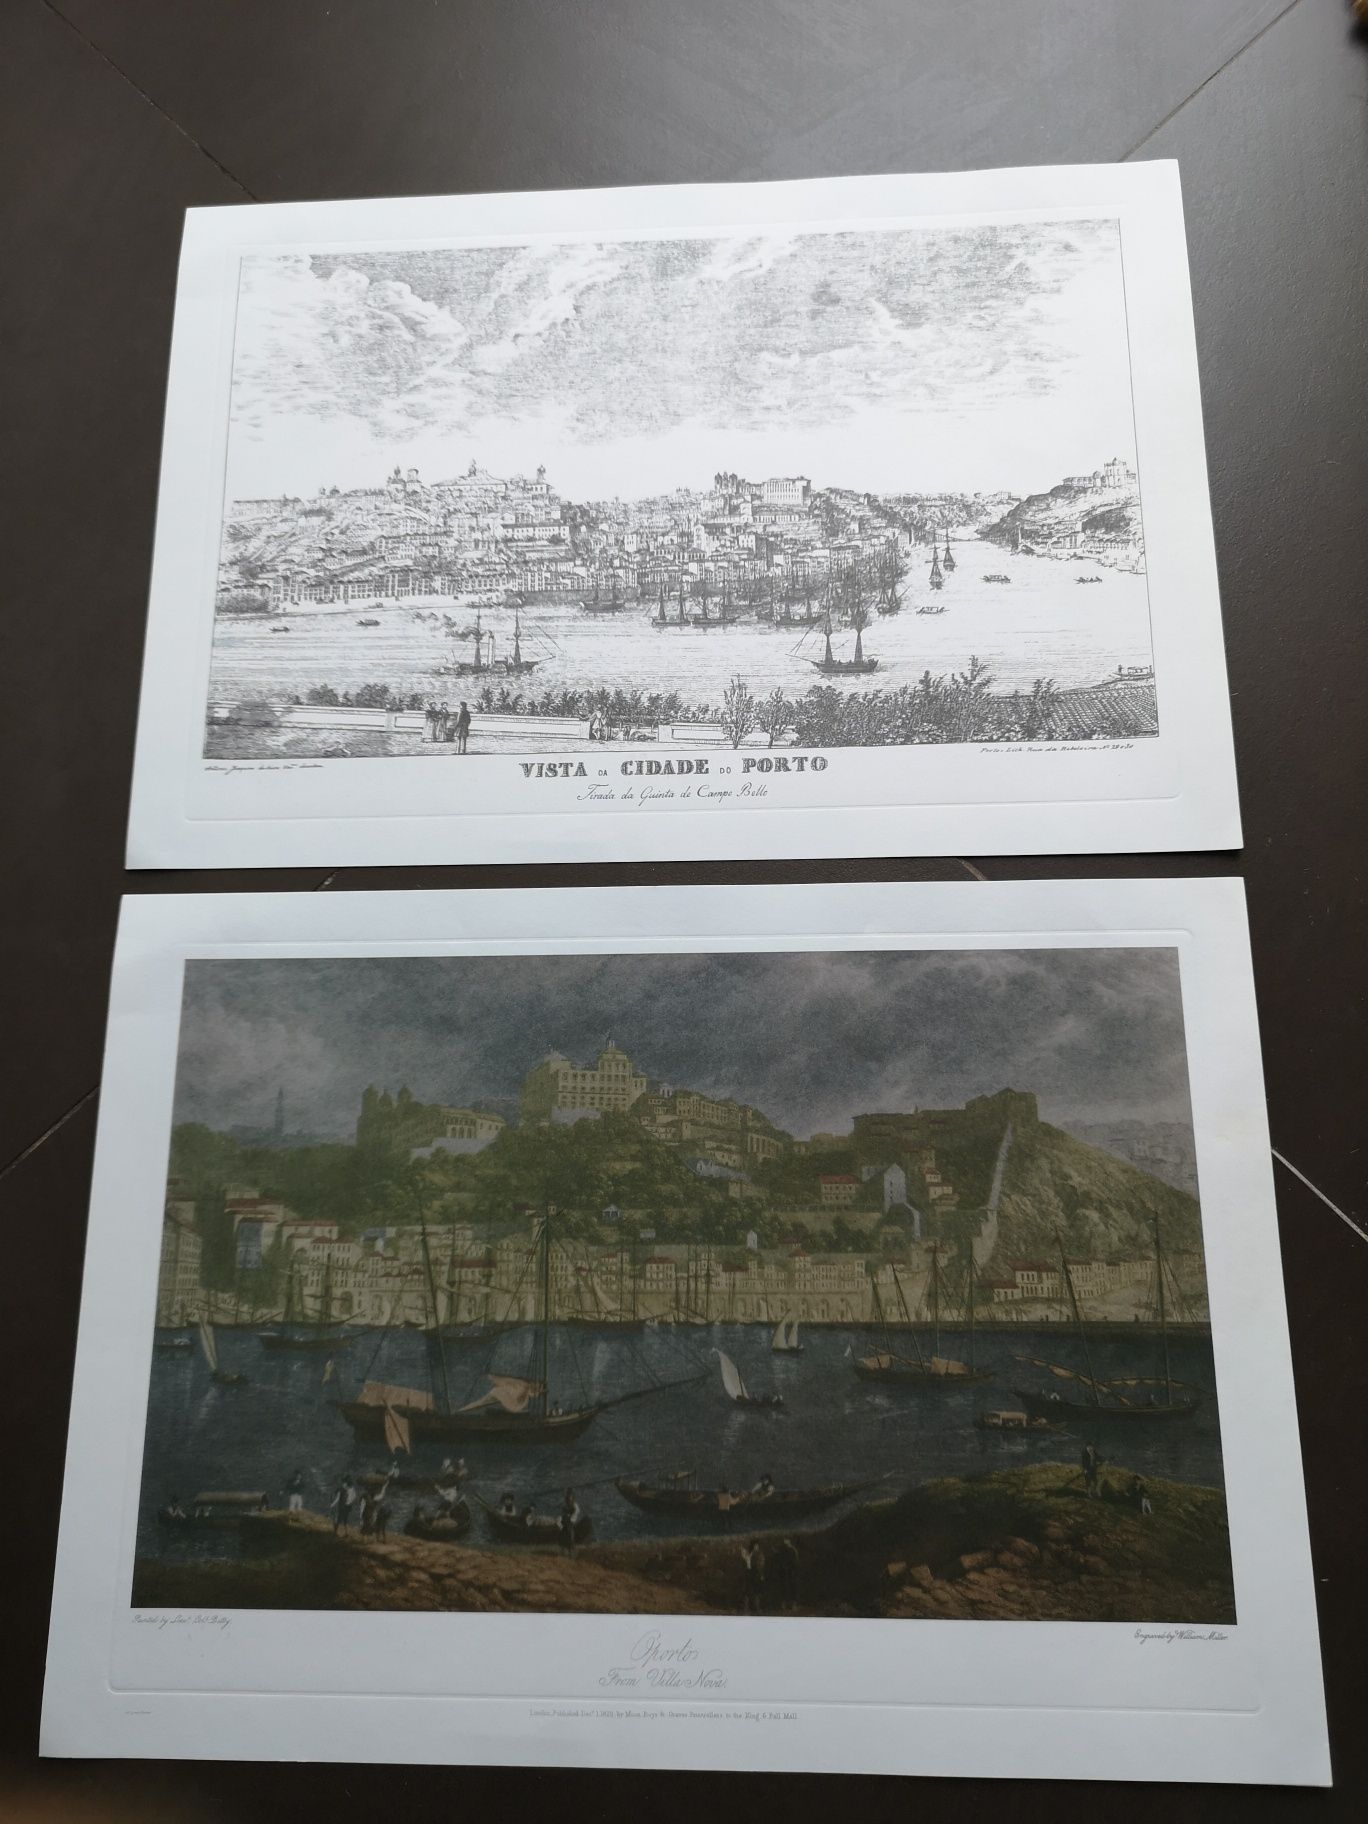 Vendo imagens fotos desenhos do Porto antigas originais